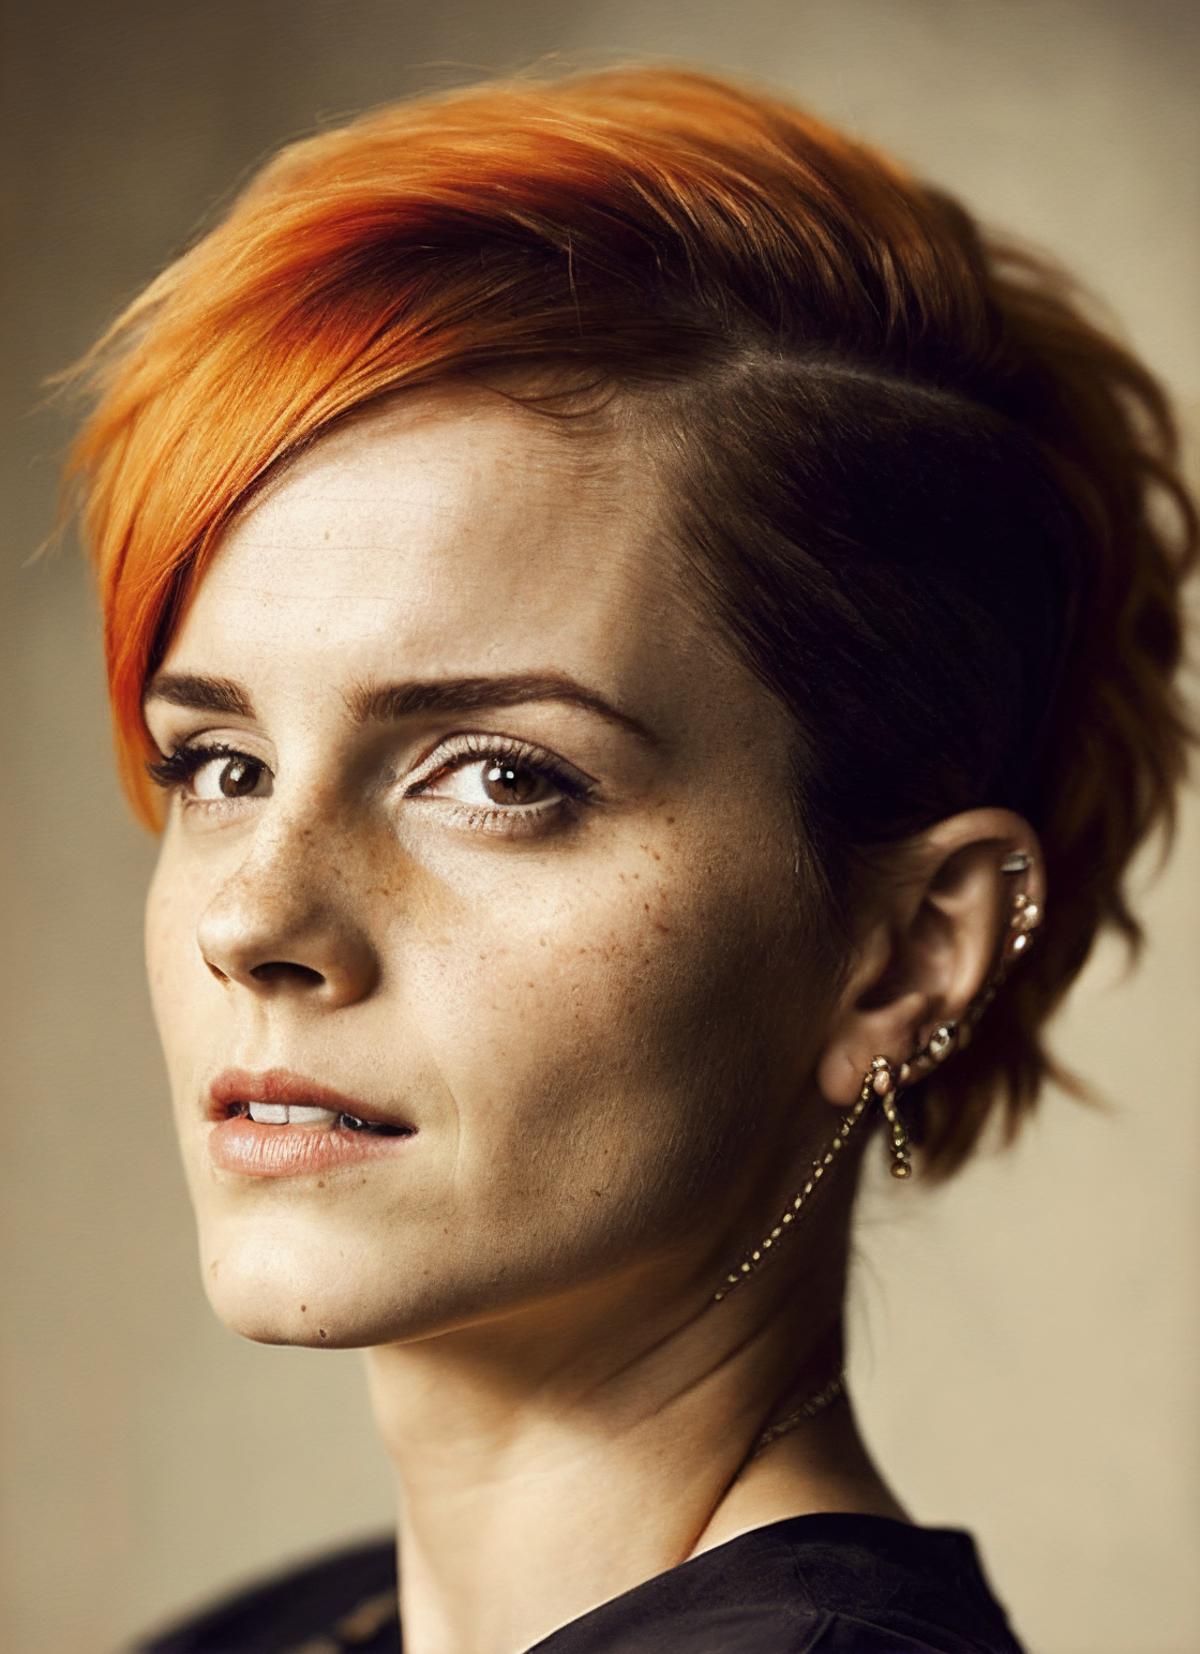 Emma Watson image by malcolmrey